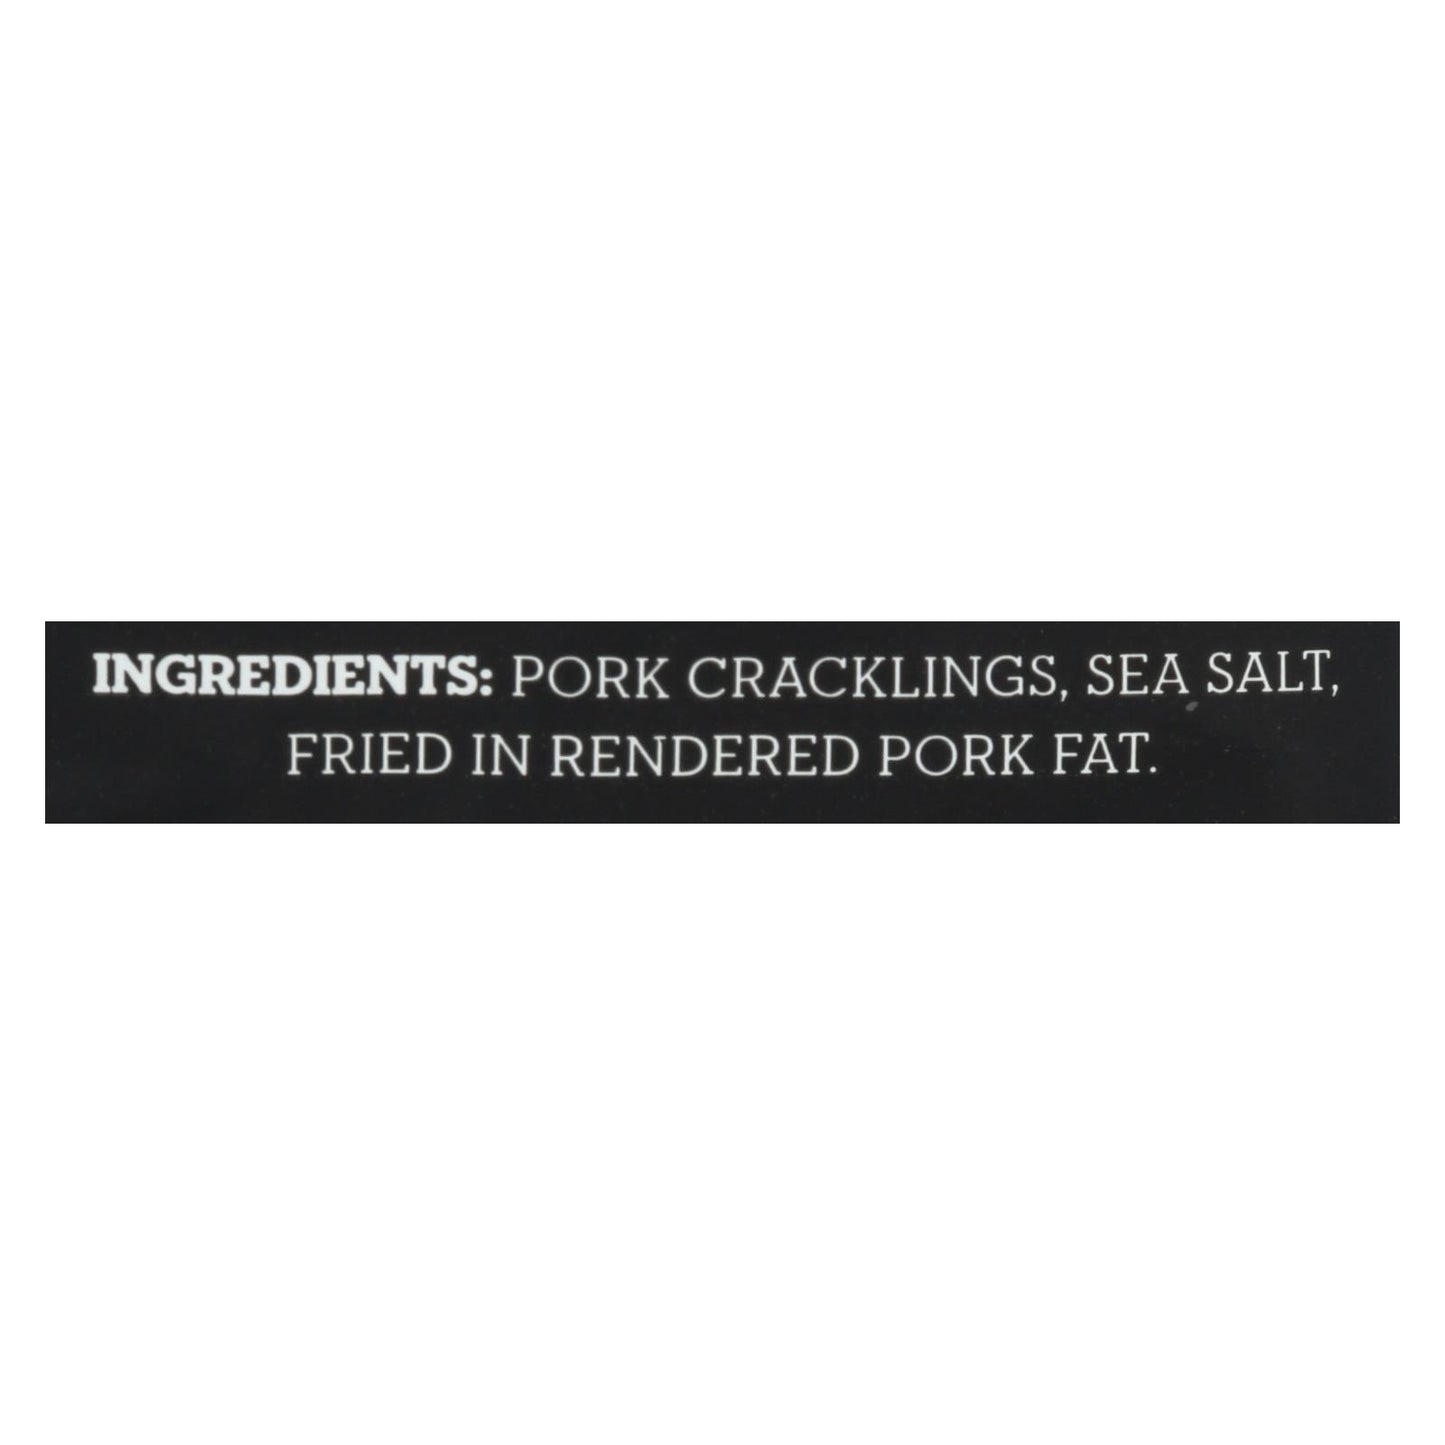 4505 - Cracklins - Sea Salt - Case Of 12 - 3 Oz.